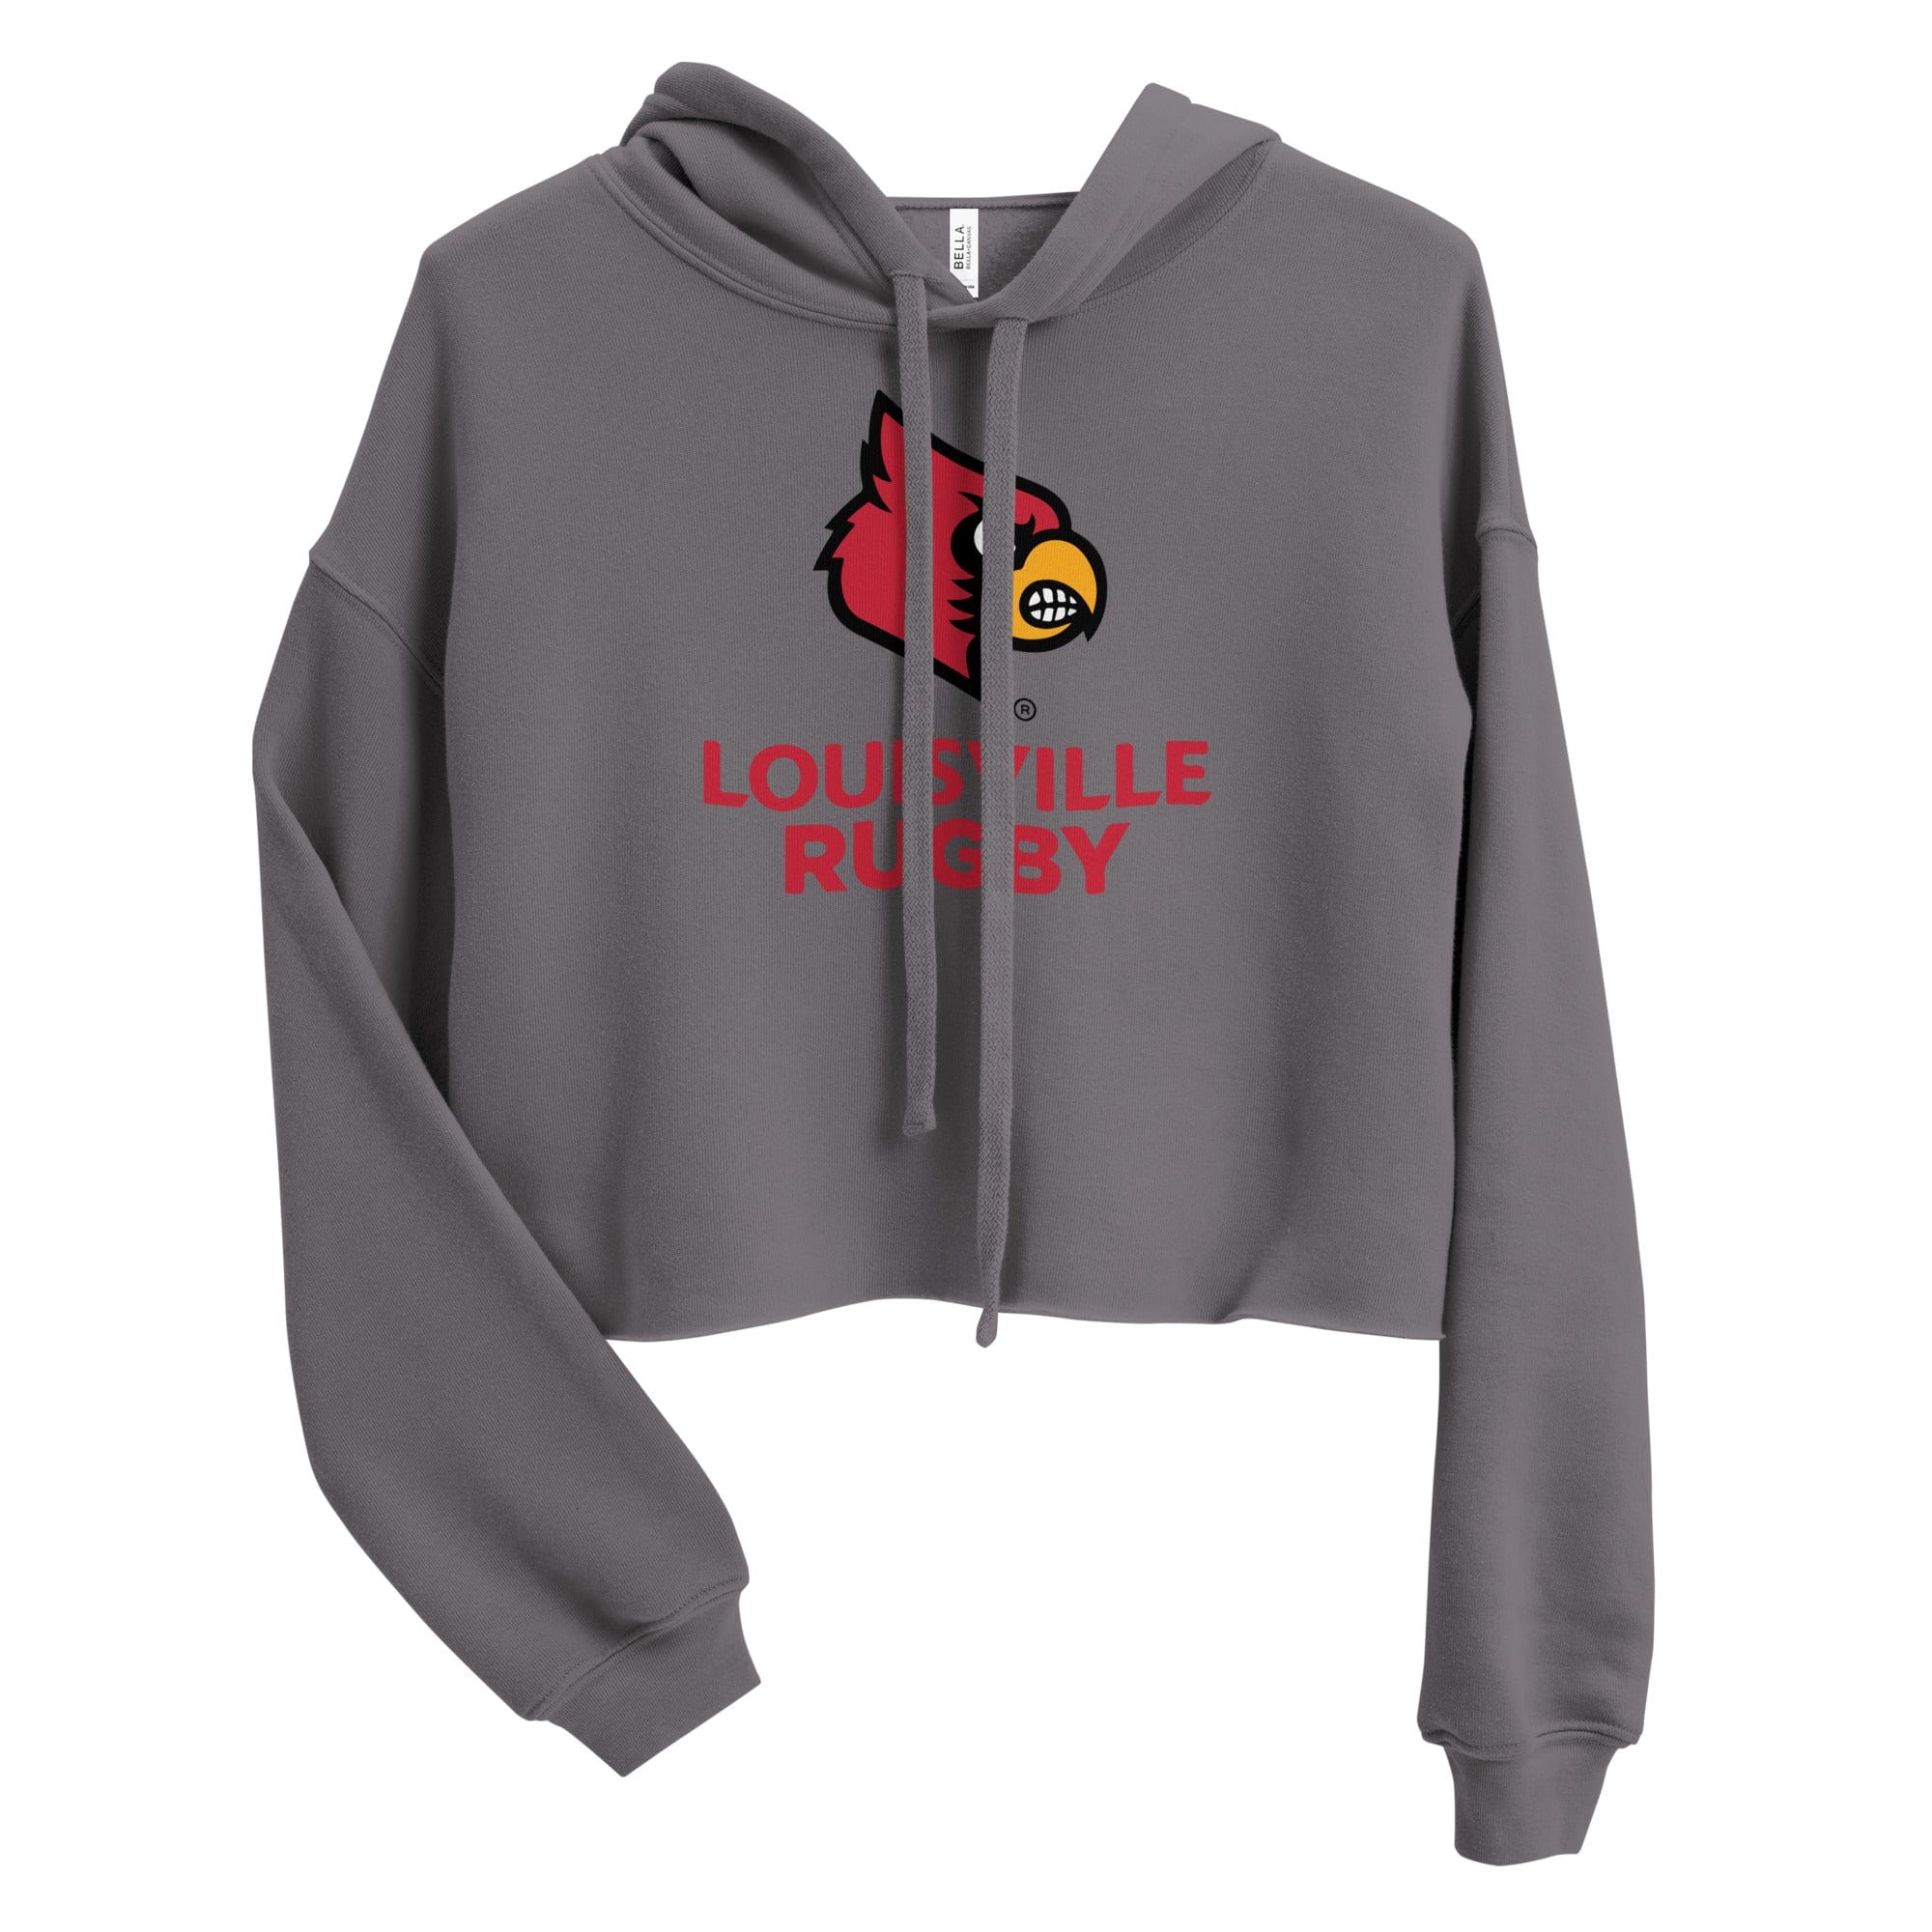 black university of louisville zippered hoodie